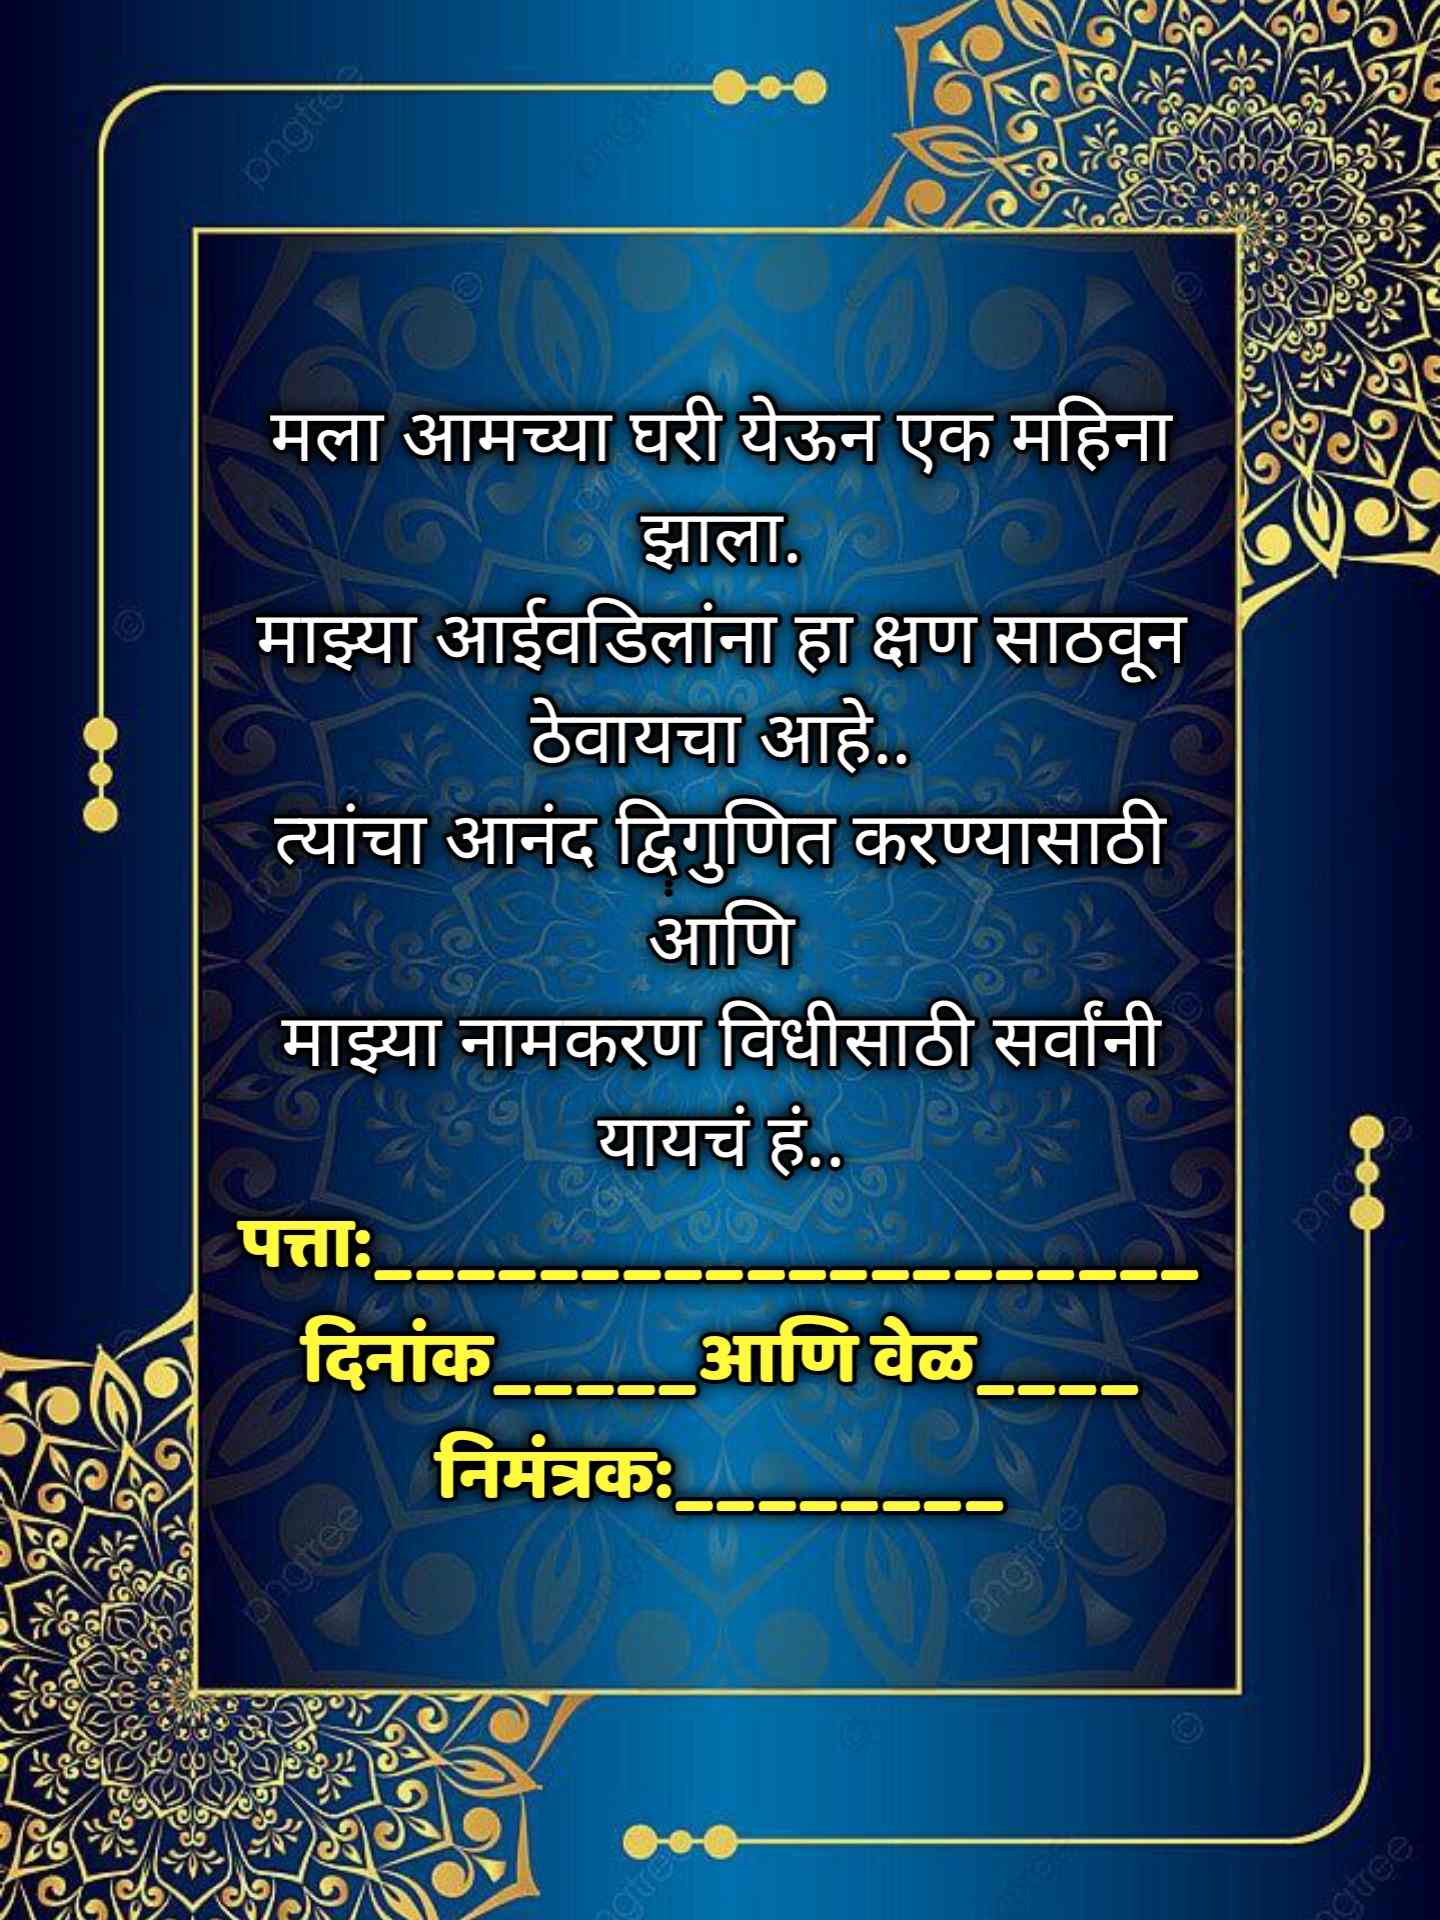 Namkaran Sohala Invitation Card Marathi 10 -